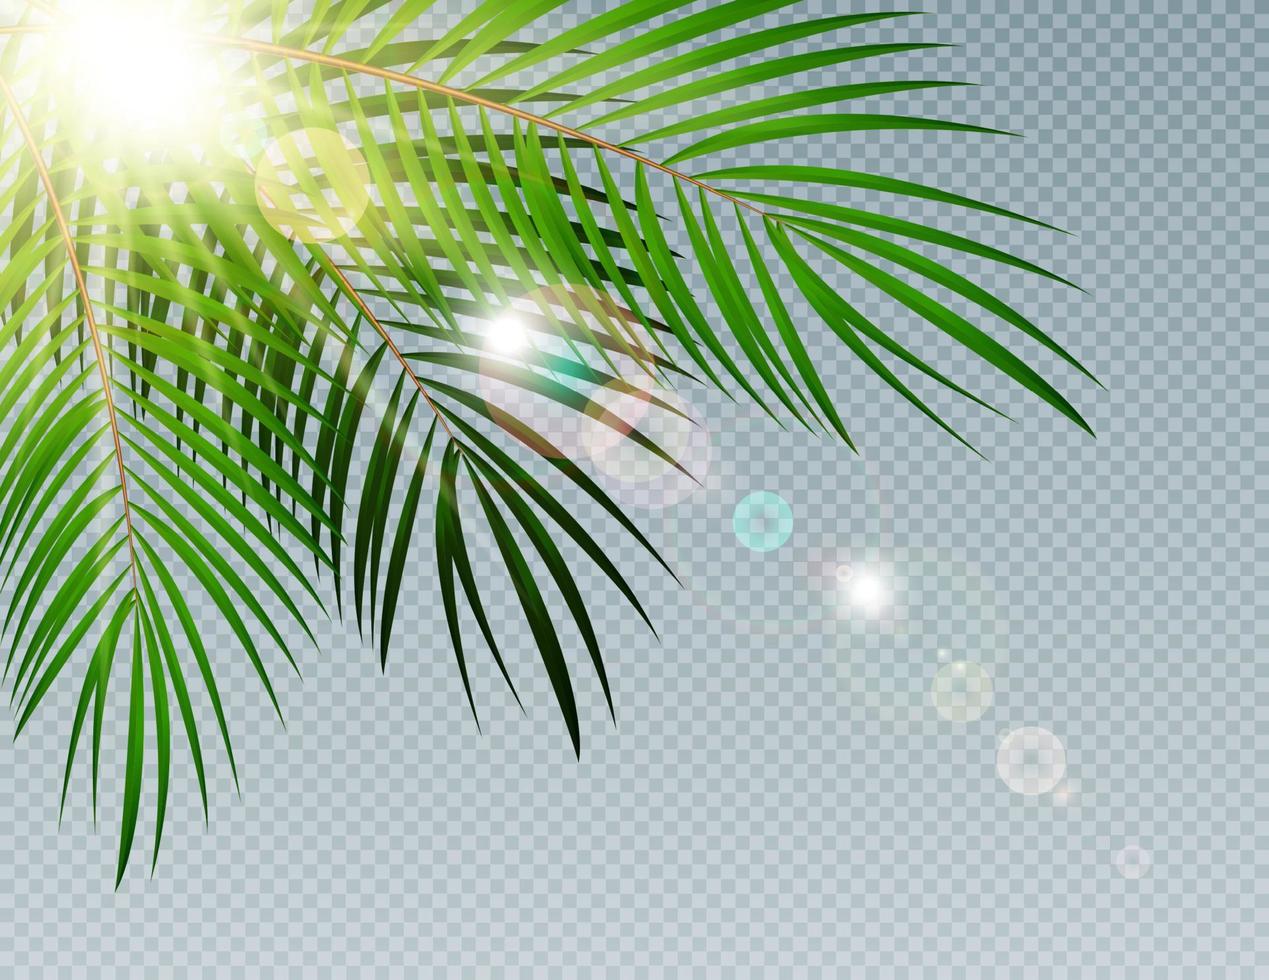 Feuille de palmier de l'heure d'été avec sun burnst sur fond transparent vector illustration